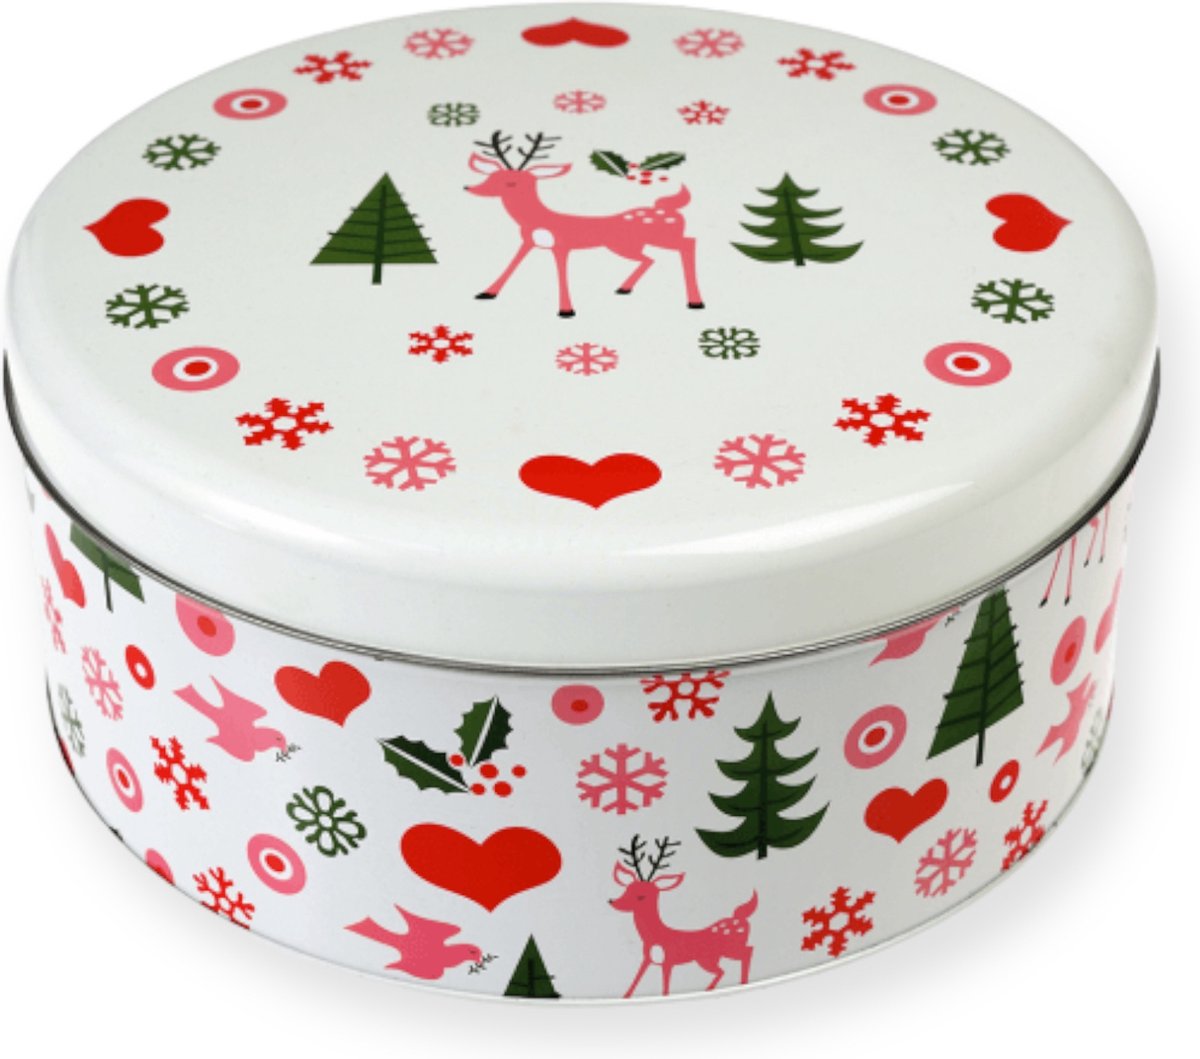 Rex London - Koekblik - Tin Round 50's Christmas - meerkleurig: roze-wit-zwart-groen-rood